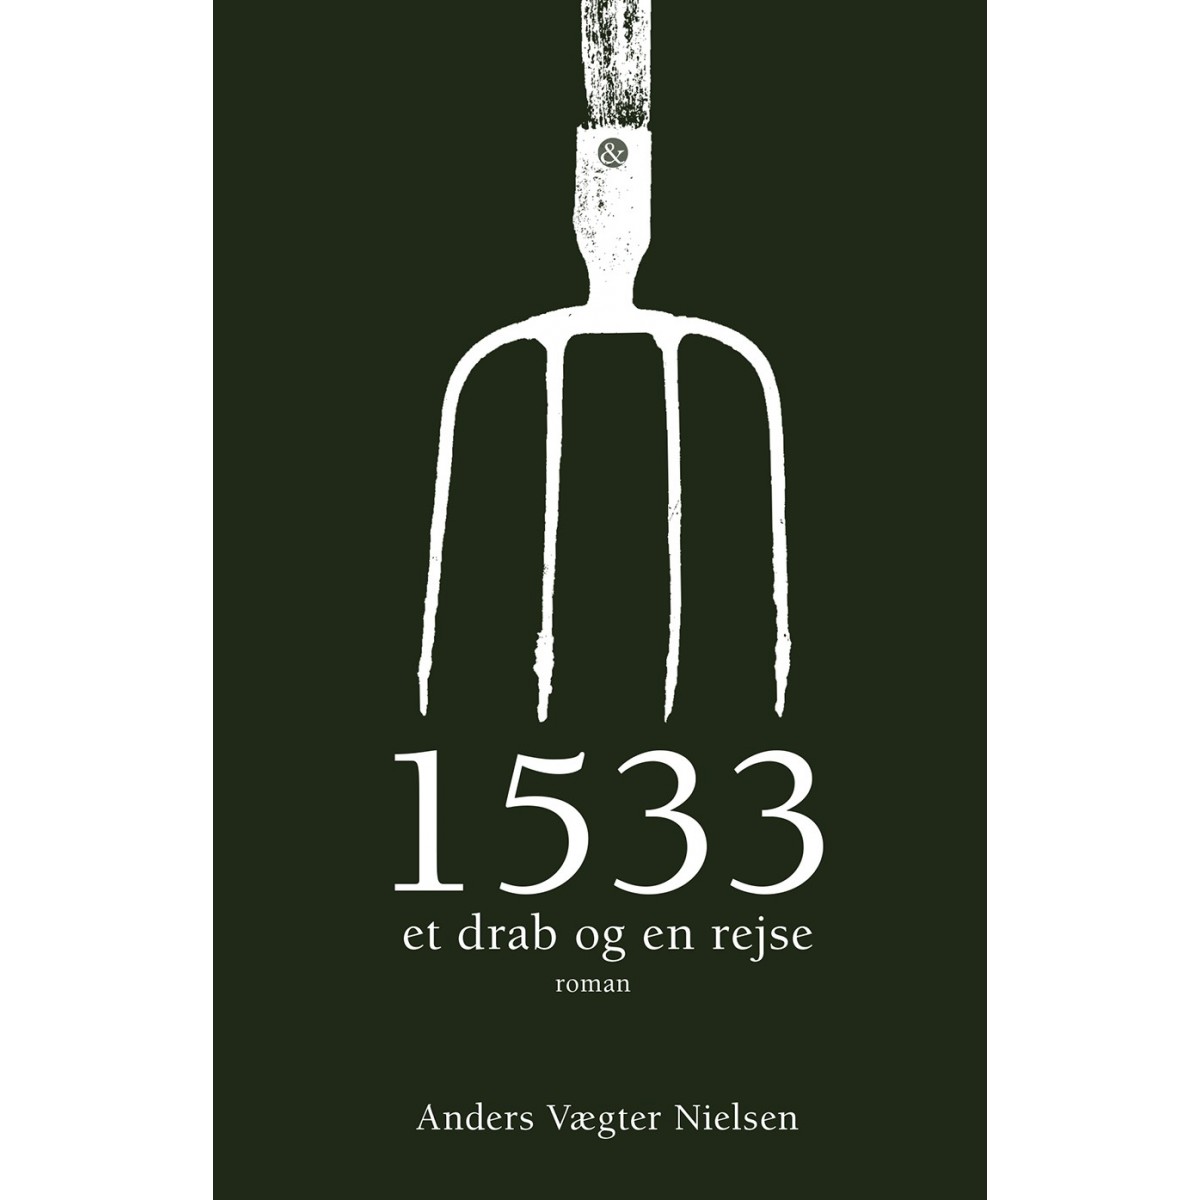 Anders Vægter Nielsen: 1533 - et drab og en rejse